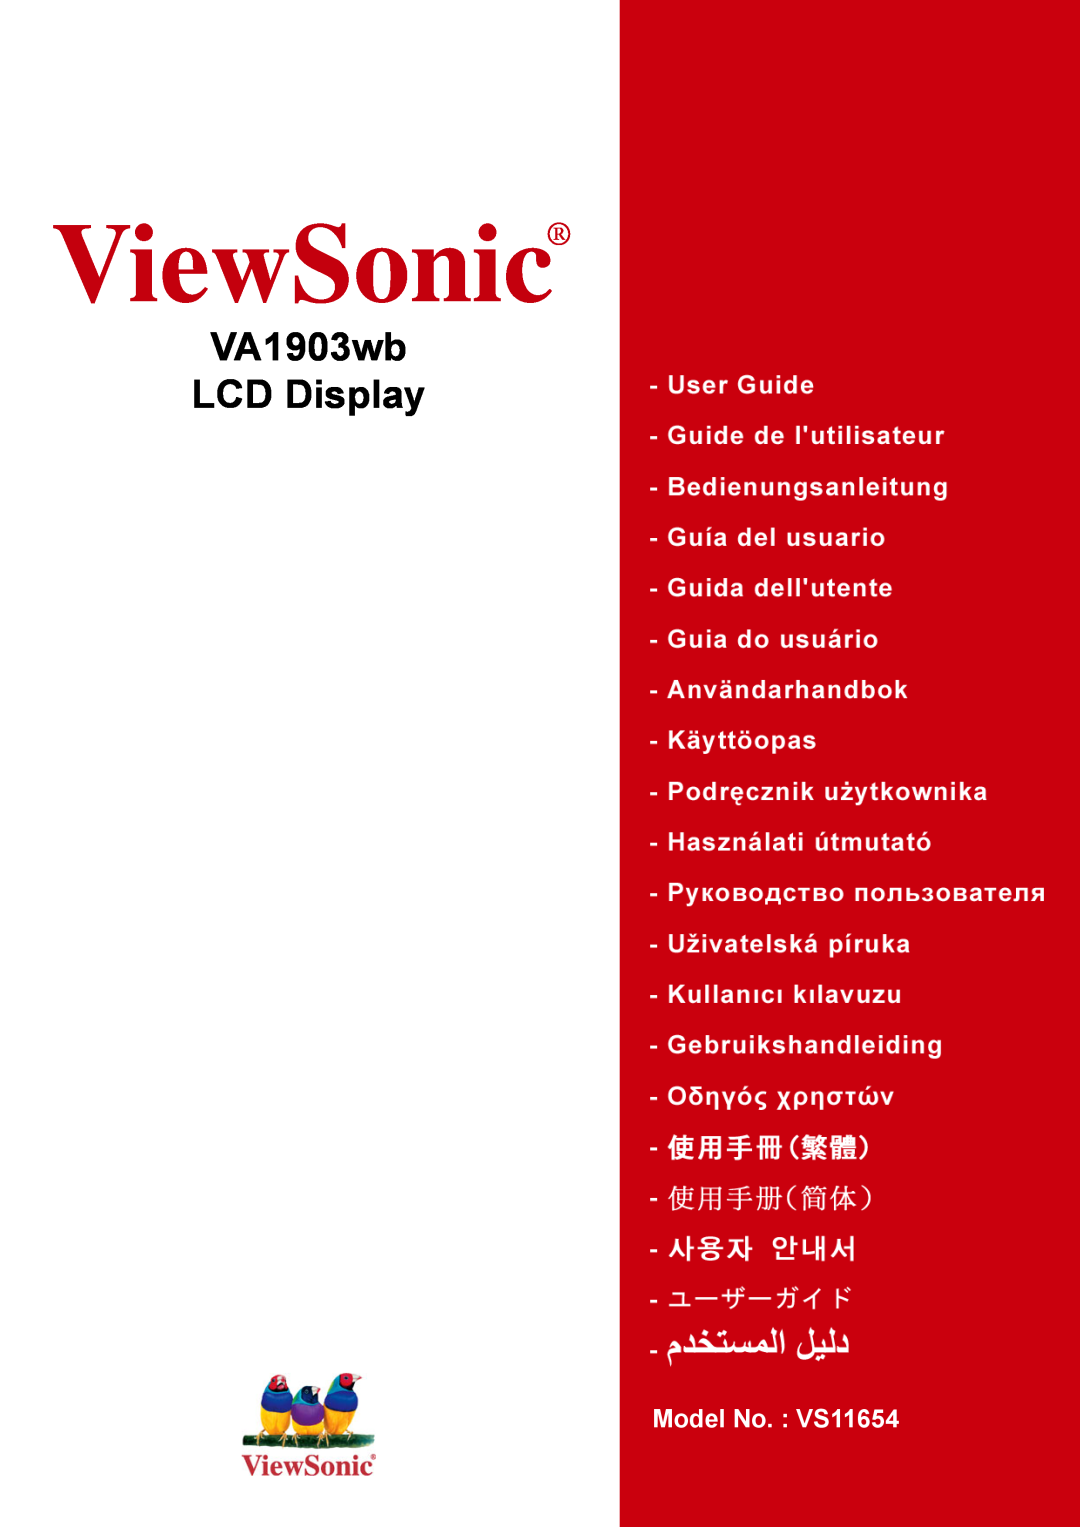 ViewSonic VA1903WB manual ViewSonic, VA1903wb LCD Display, Model No. VS11654 